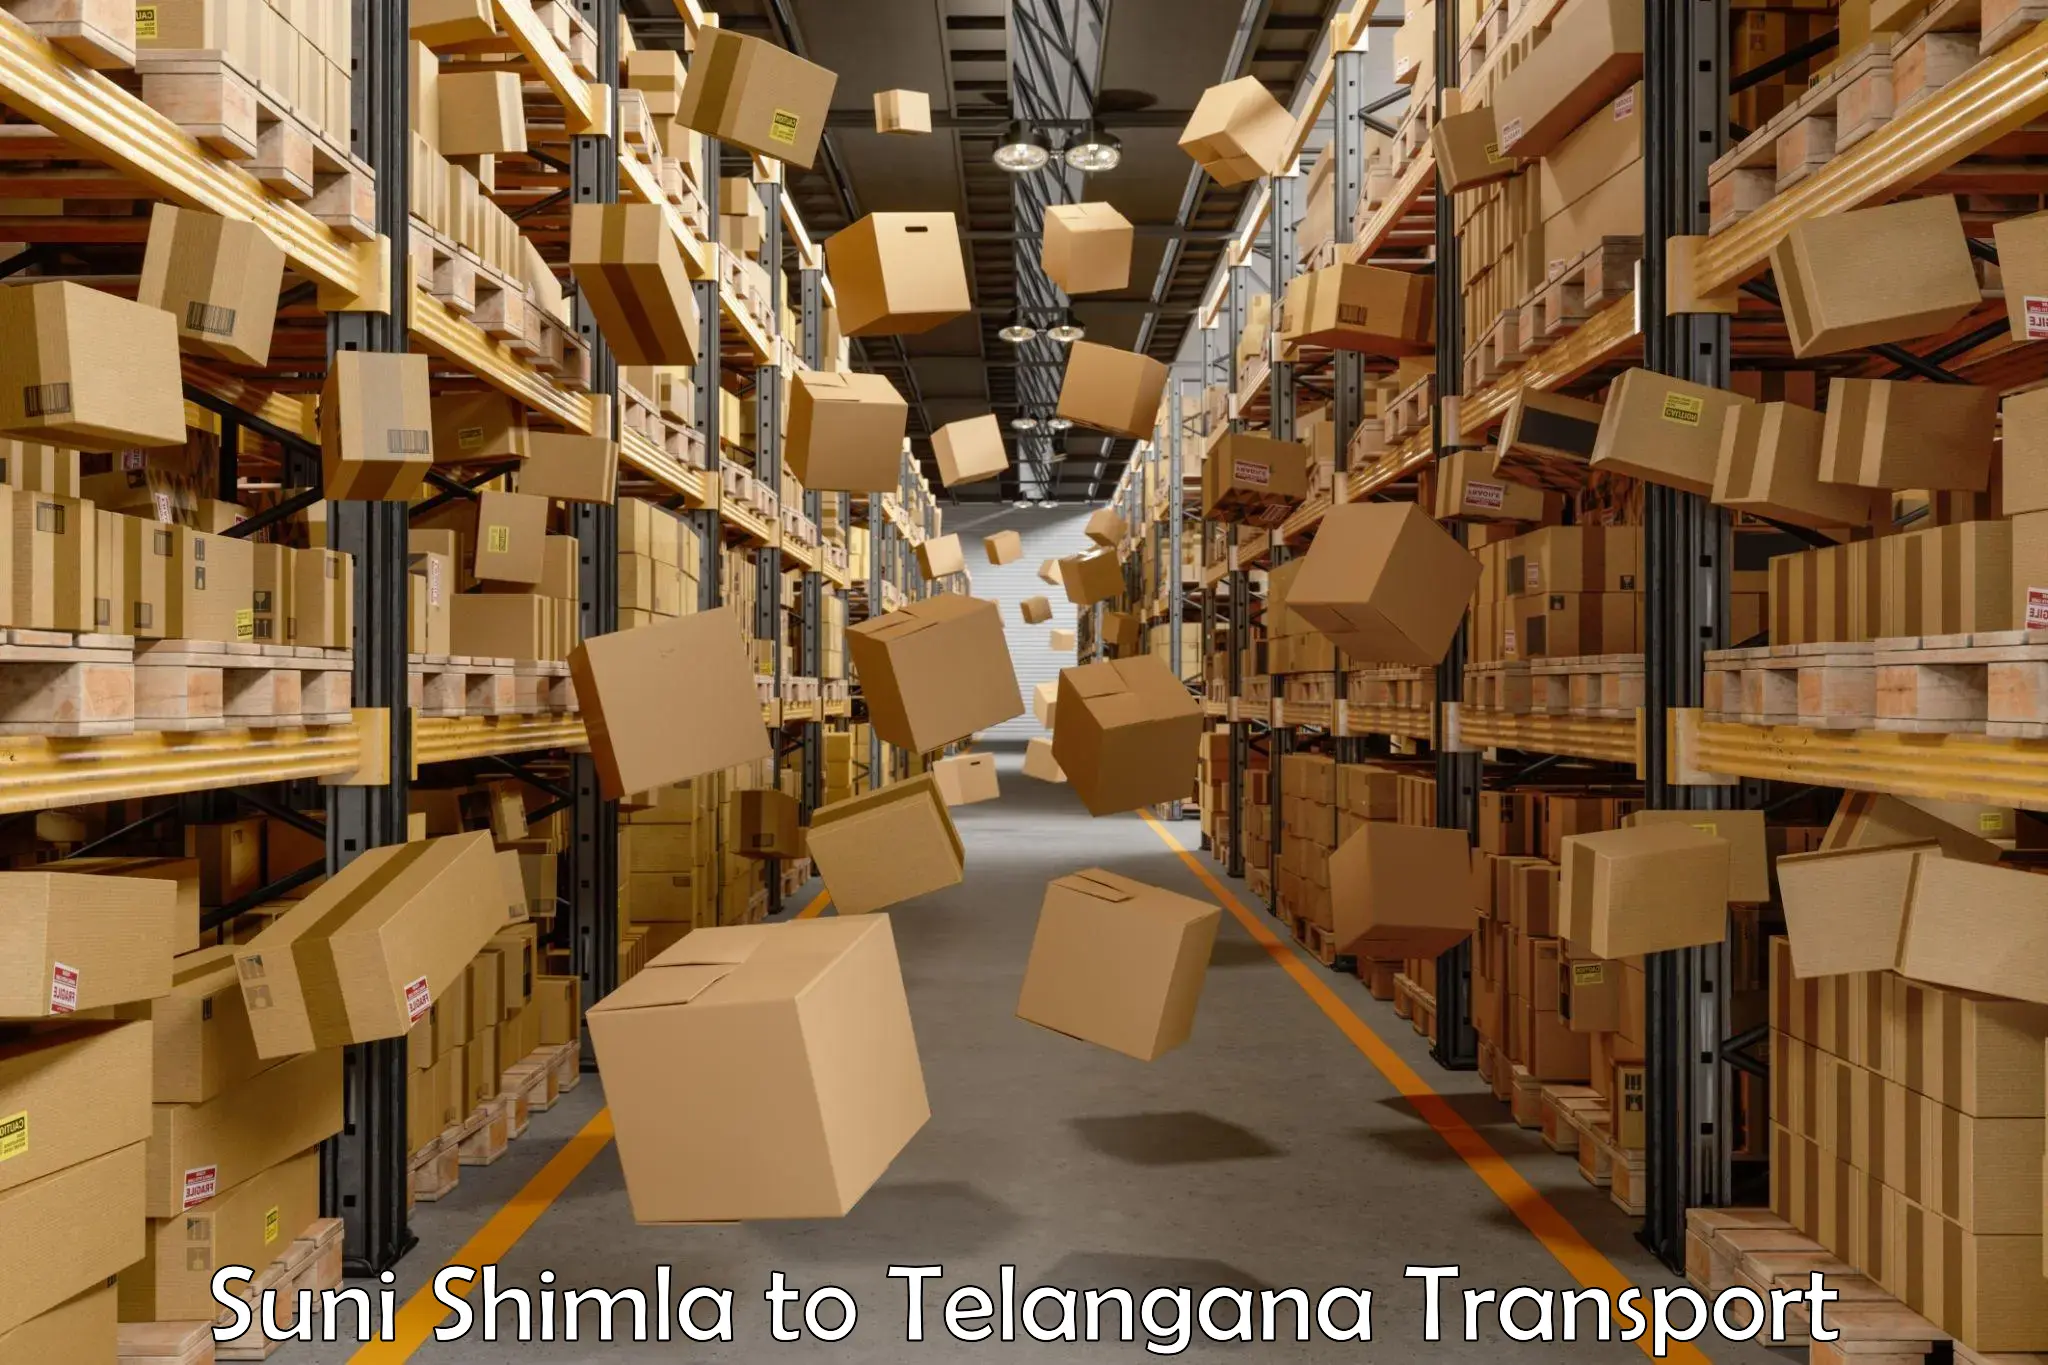 Shipping partner Suni Shimla to Bejjanki